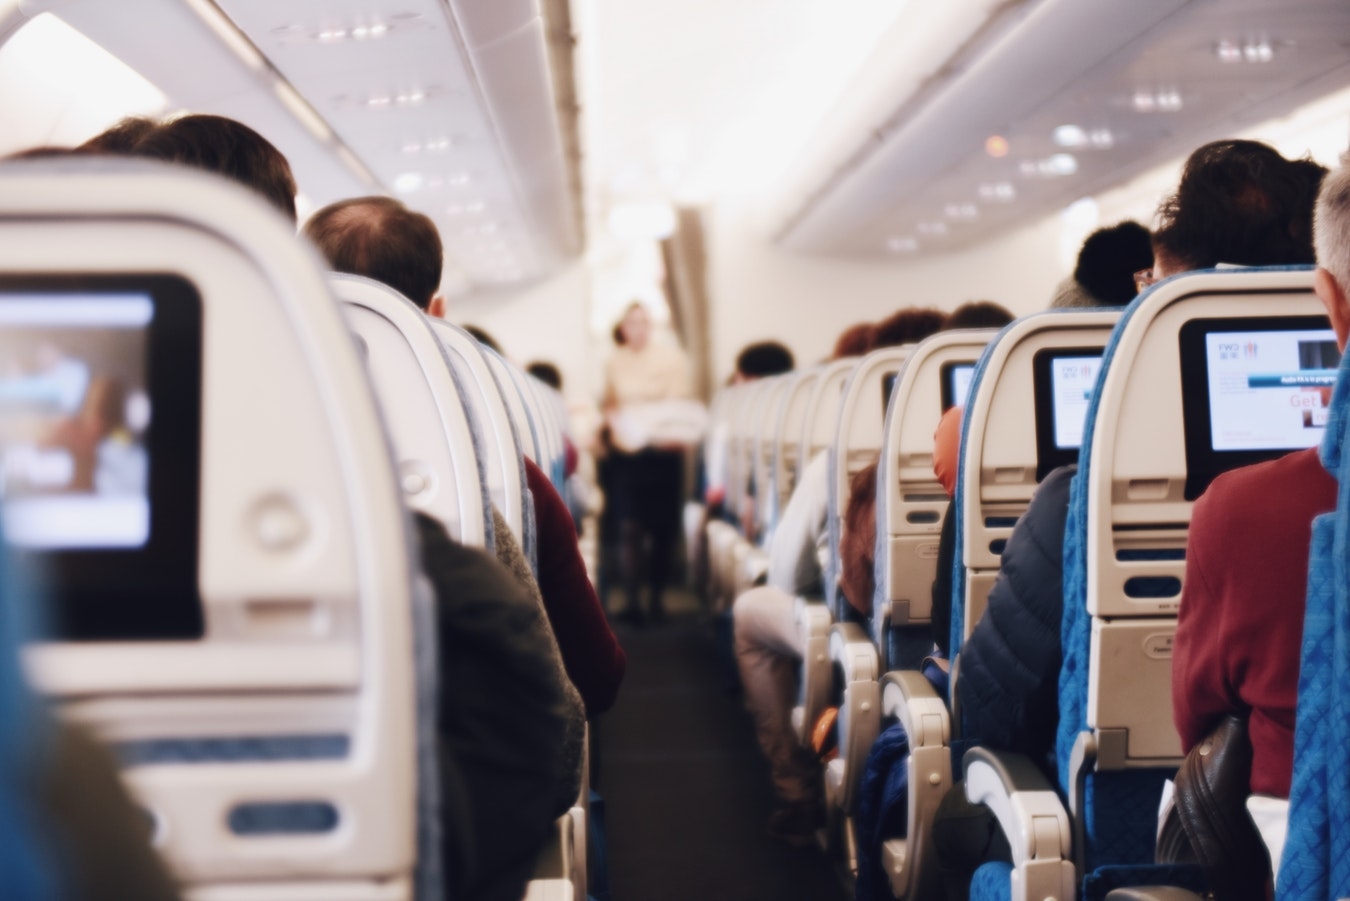 Пассажиры избили стюардессу за отказ фотографироваться с ними - ФОТО